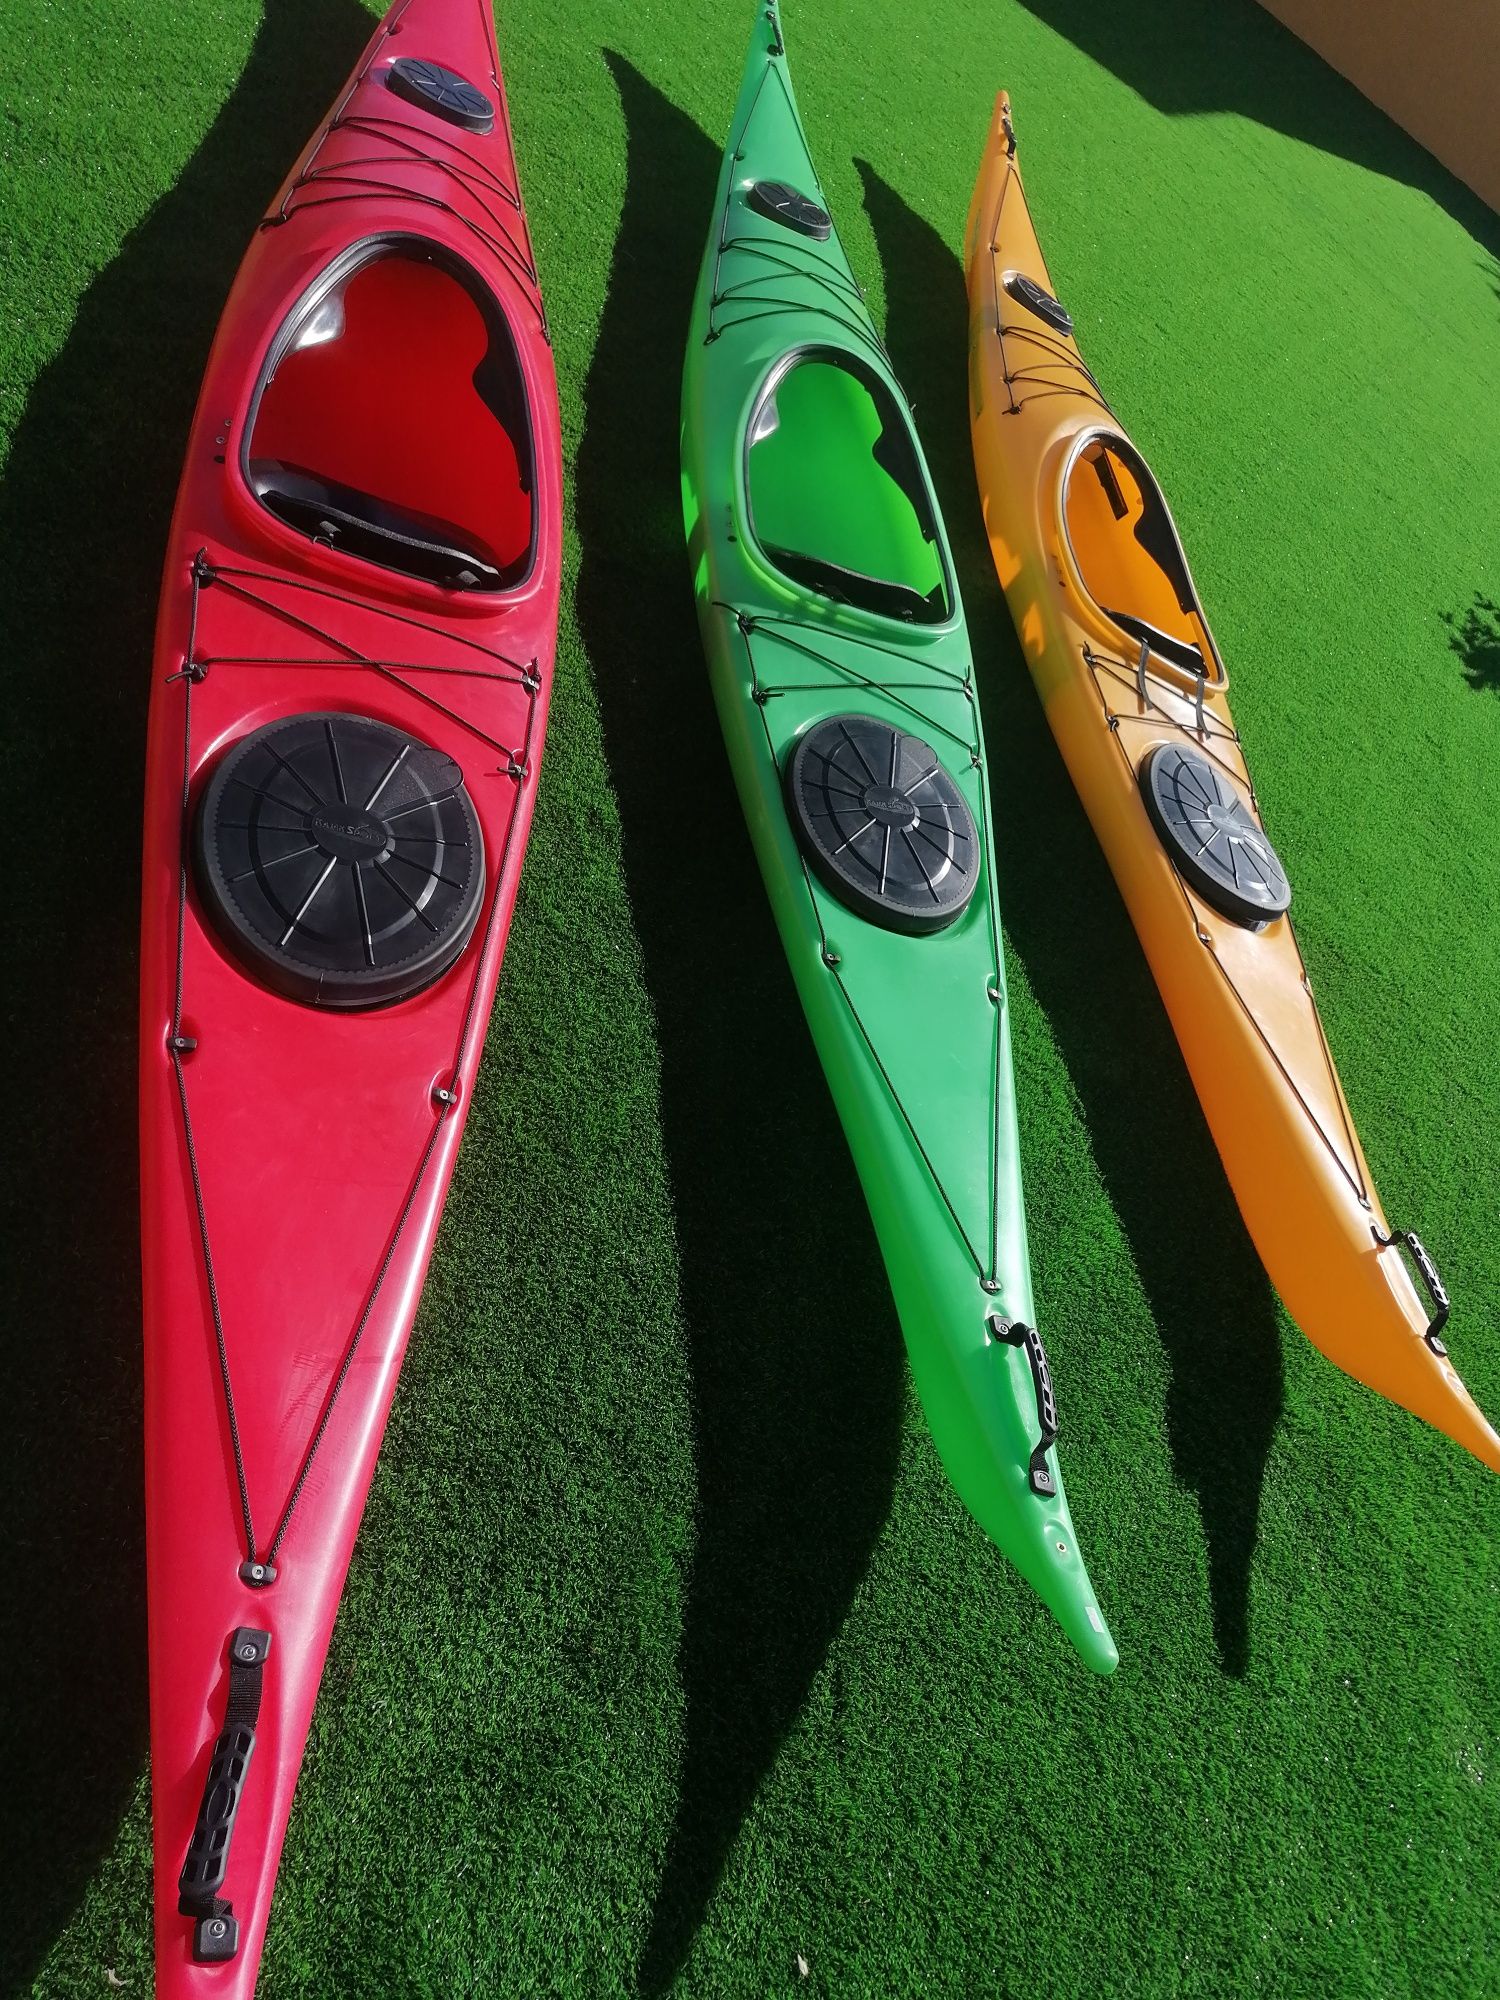 Green Tech Kayaks®  | MK1 - Novos